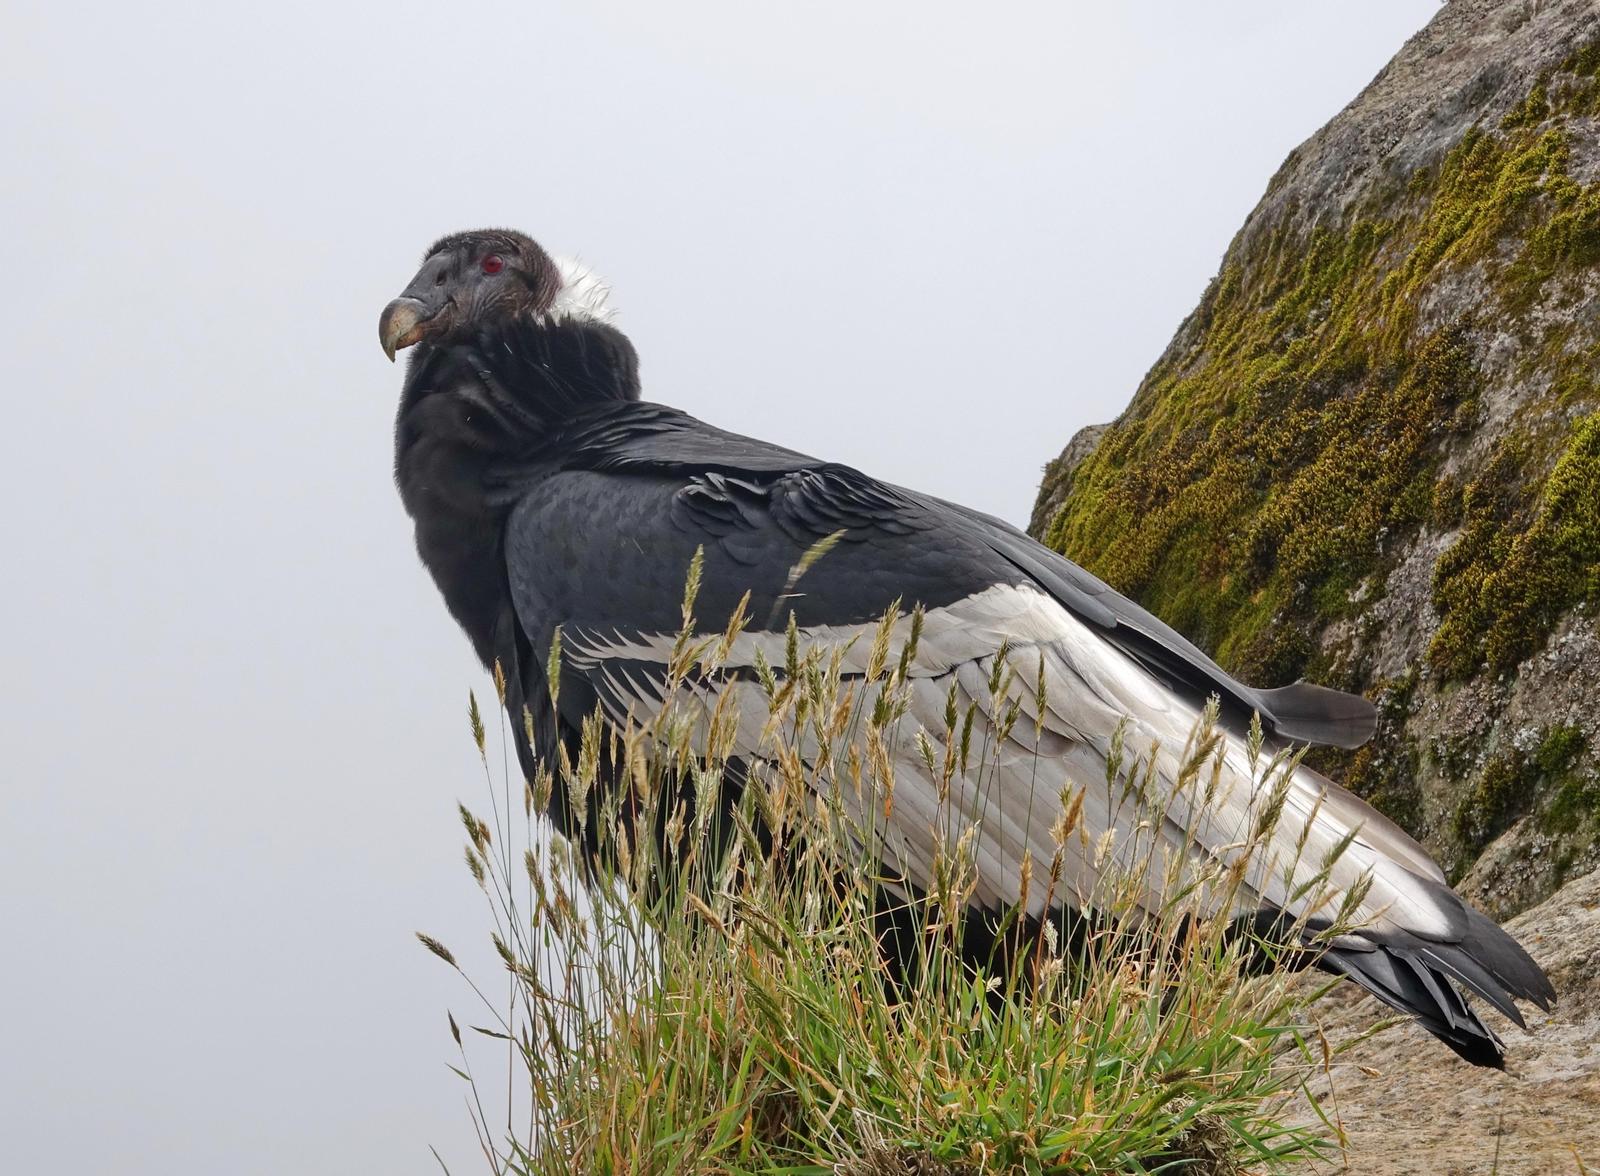 Andean Condor Photo by Doug Swartz